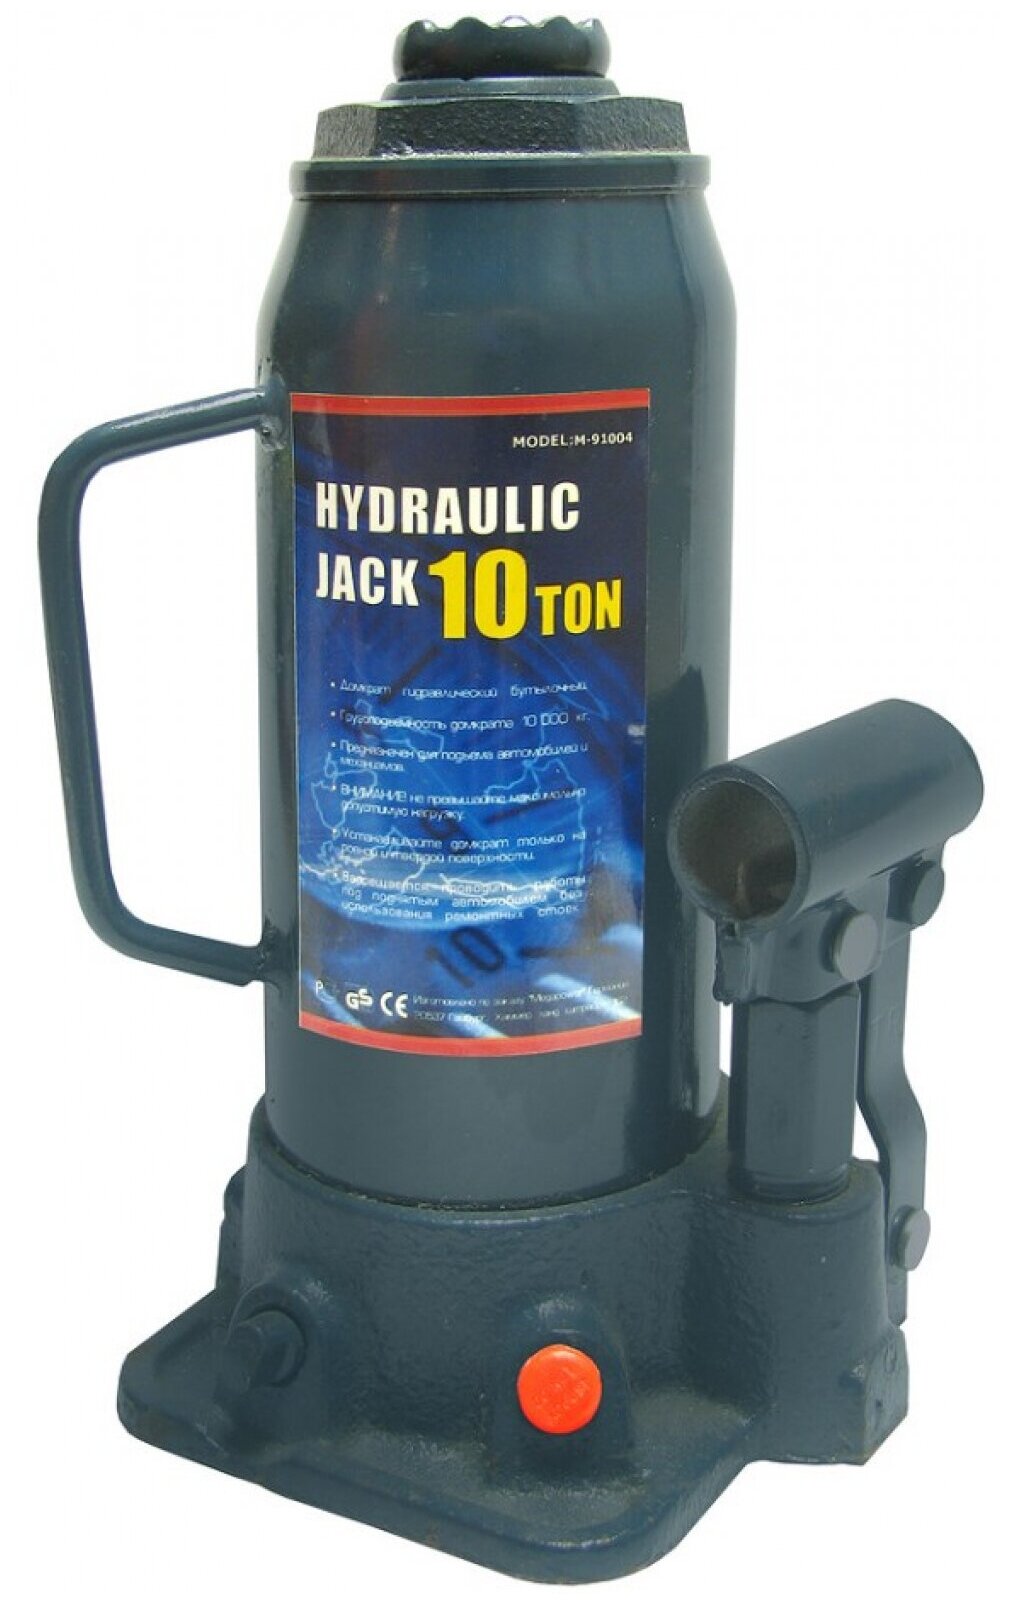 Домкрат гидравлический M-91004 бутылочный 10т (выс. подъема 230-460мм) с клапаном MEGAPOWER /1/4